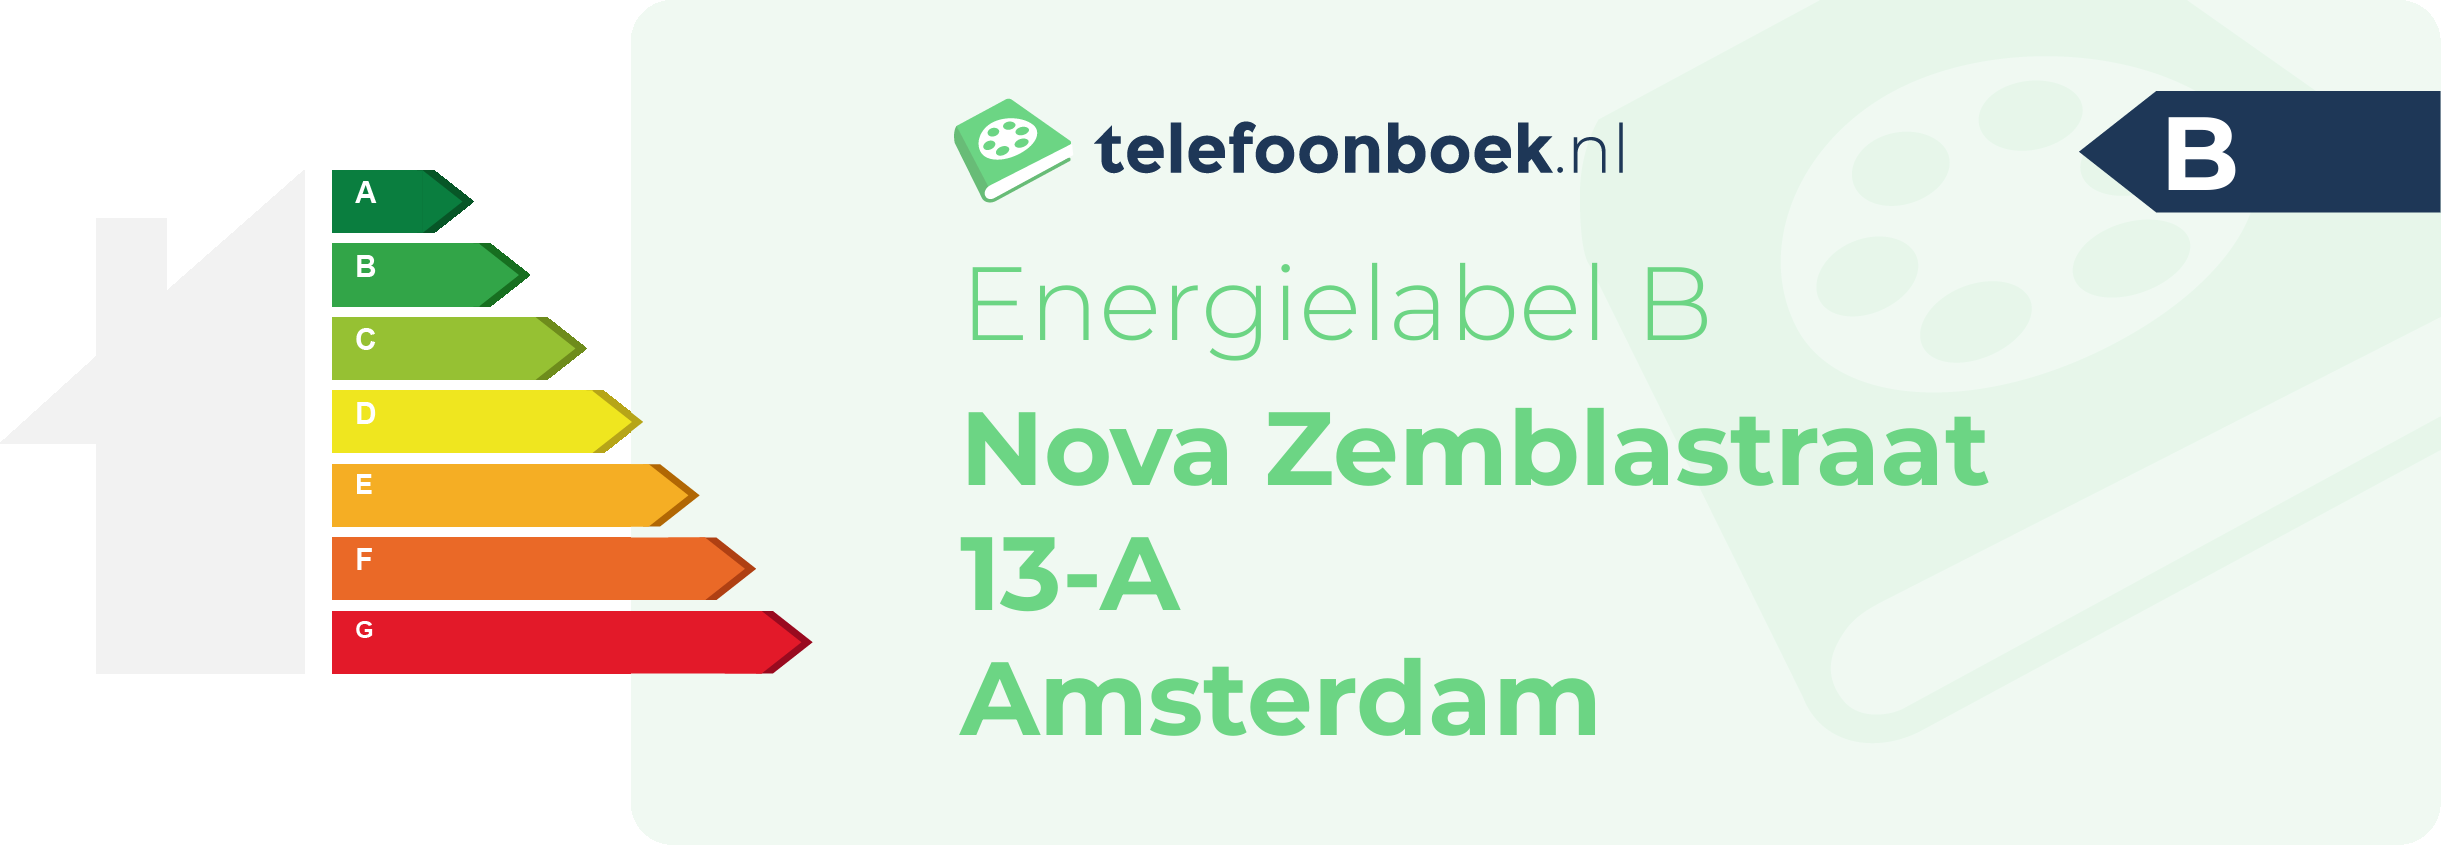 Energielabel Nova Zemblastraat 13-A Amsterdam